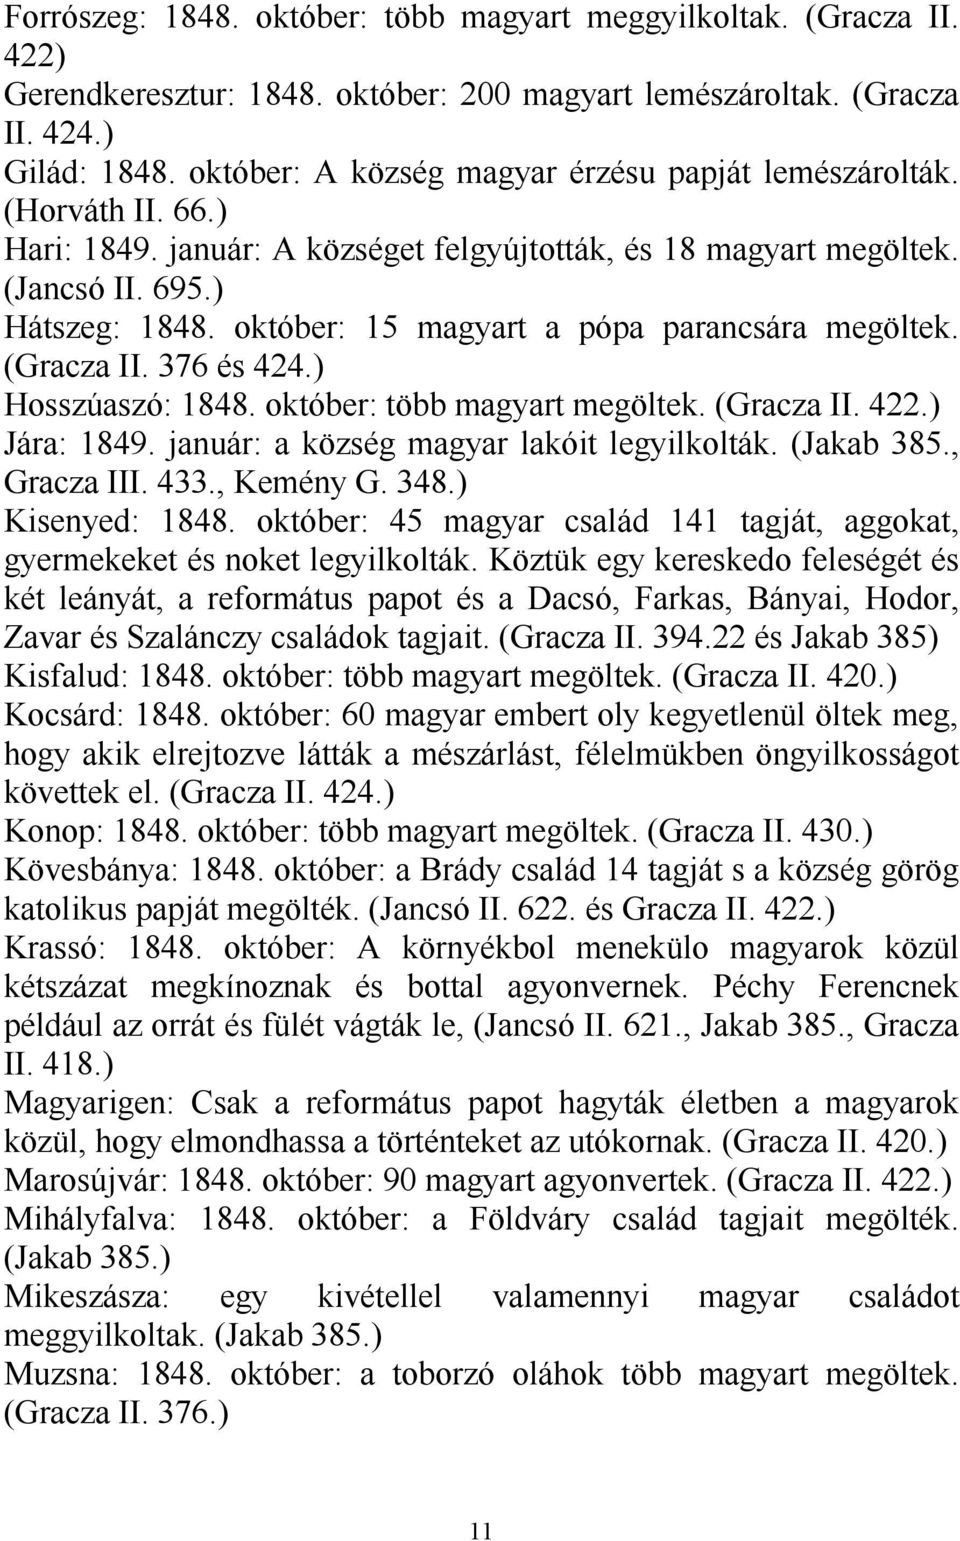 október: 15 magyart a pópa parancsára megöltek. (Gracza II. 376 és 424.) Hosszúaszó: 1848. október: több magyart megöltek. (Gracza II. 422.) Jára: 1849. január: a község magyar lakóit legyilkolták.